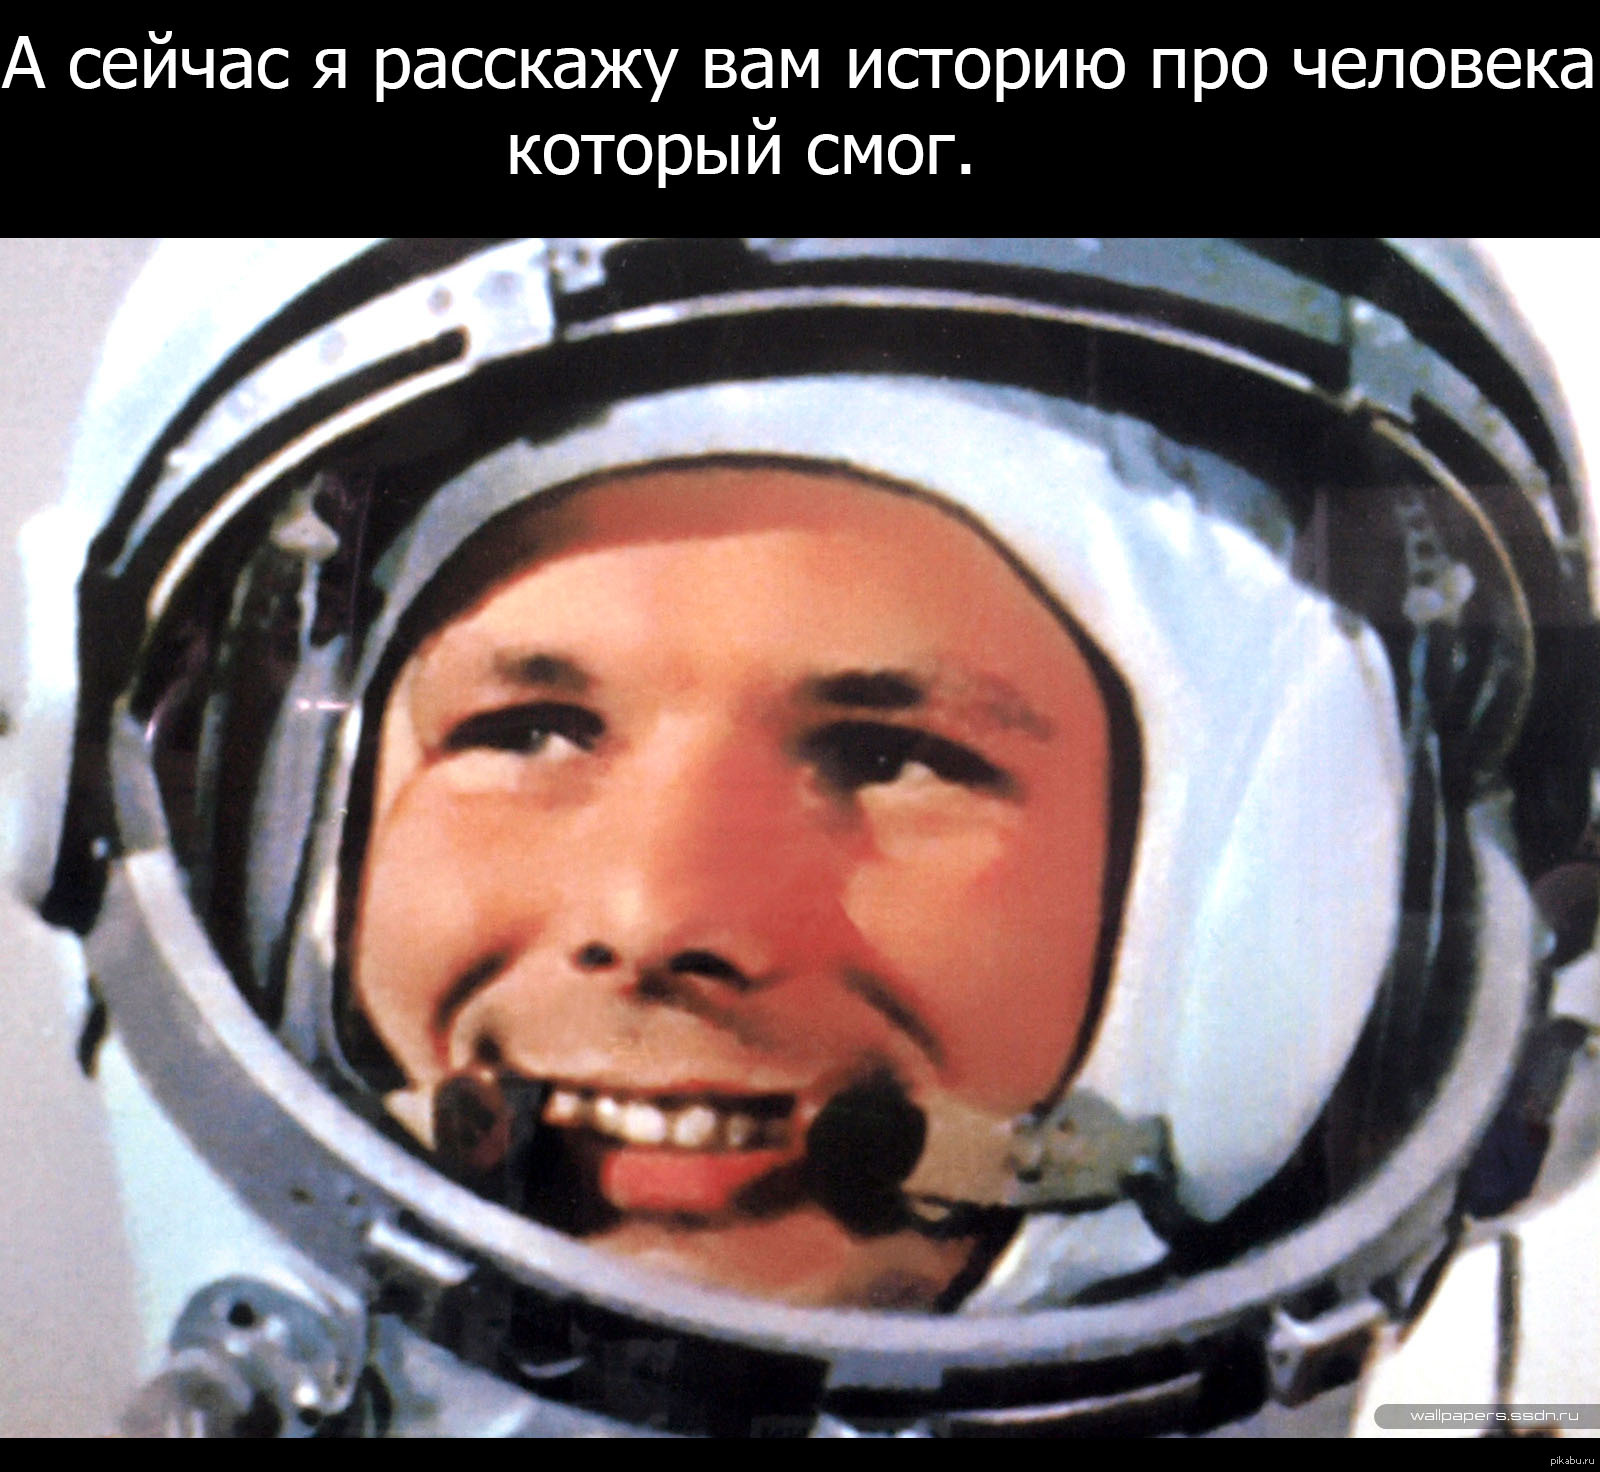 Фото гагарина в шлеме. Гагарин космонавт.